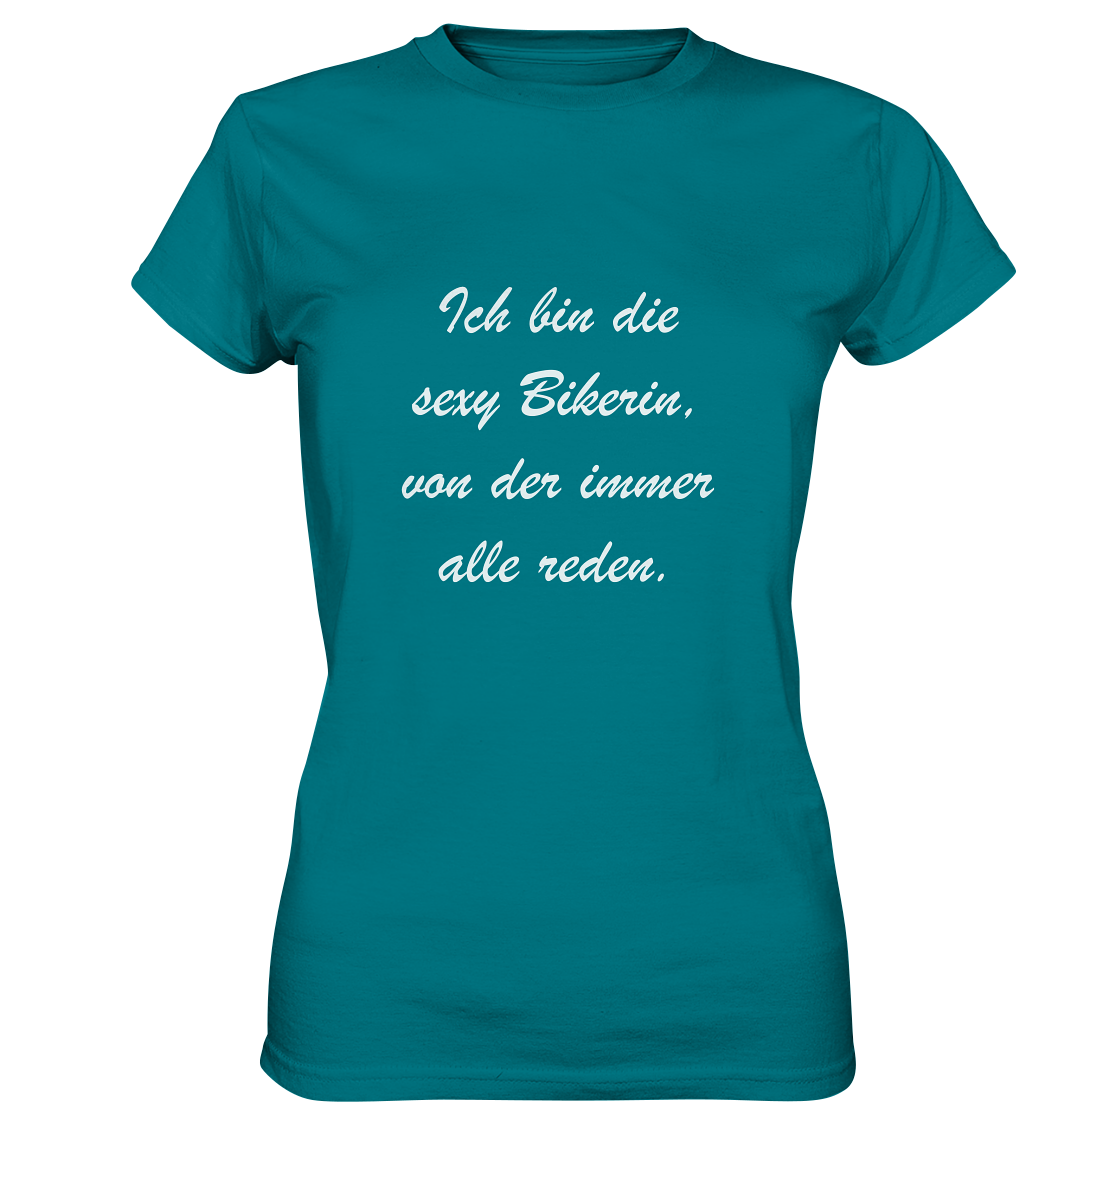 Damen-T-Shirt, Rundhals, mit weißem Spruch "Ich bin die sexy Bikerin, von der immer alle reden." türkis